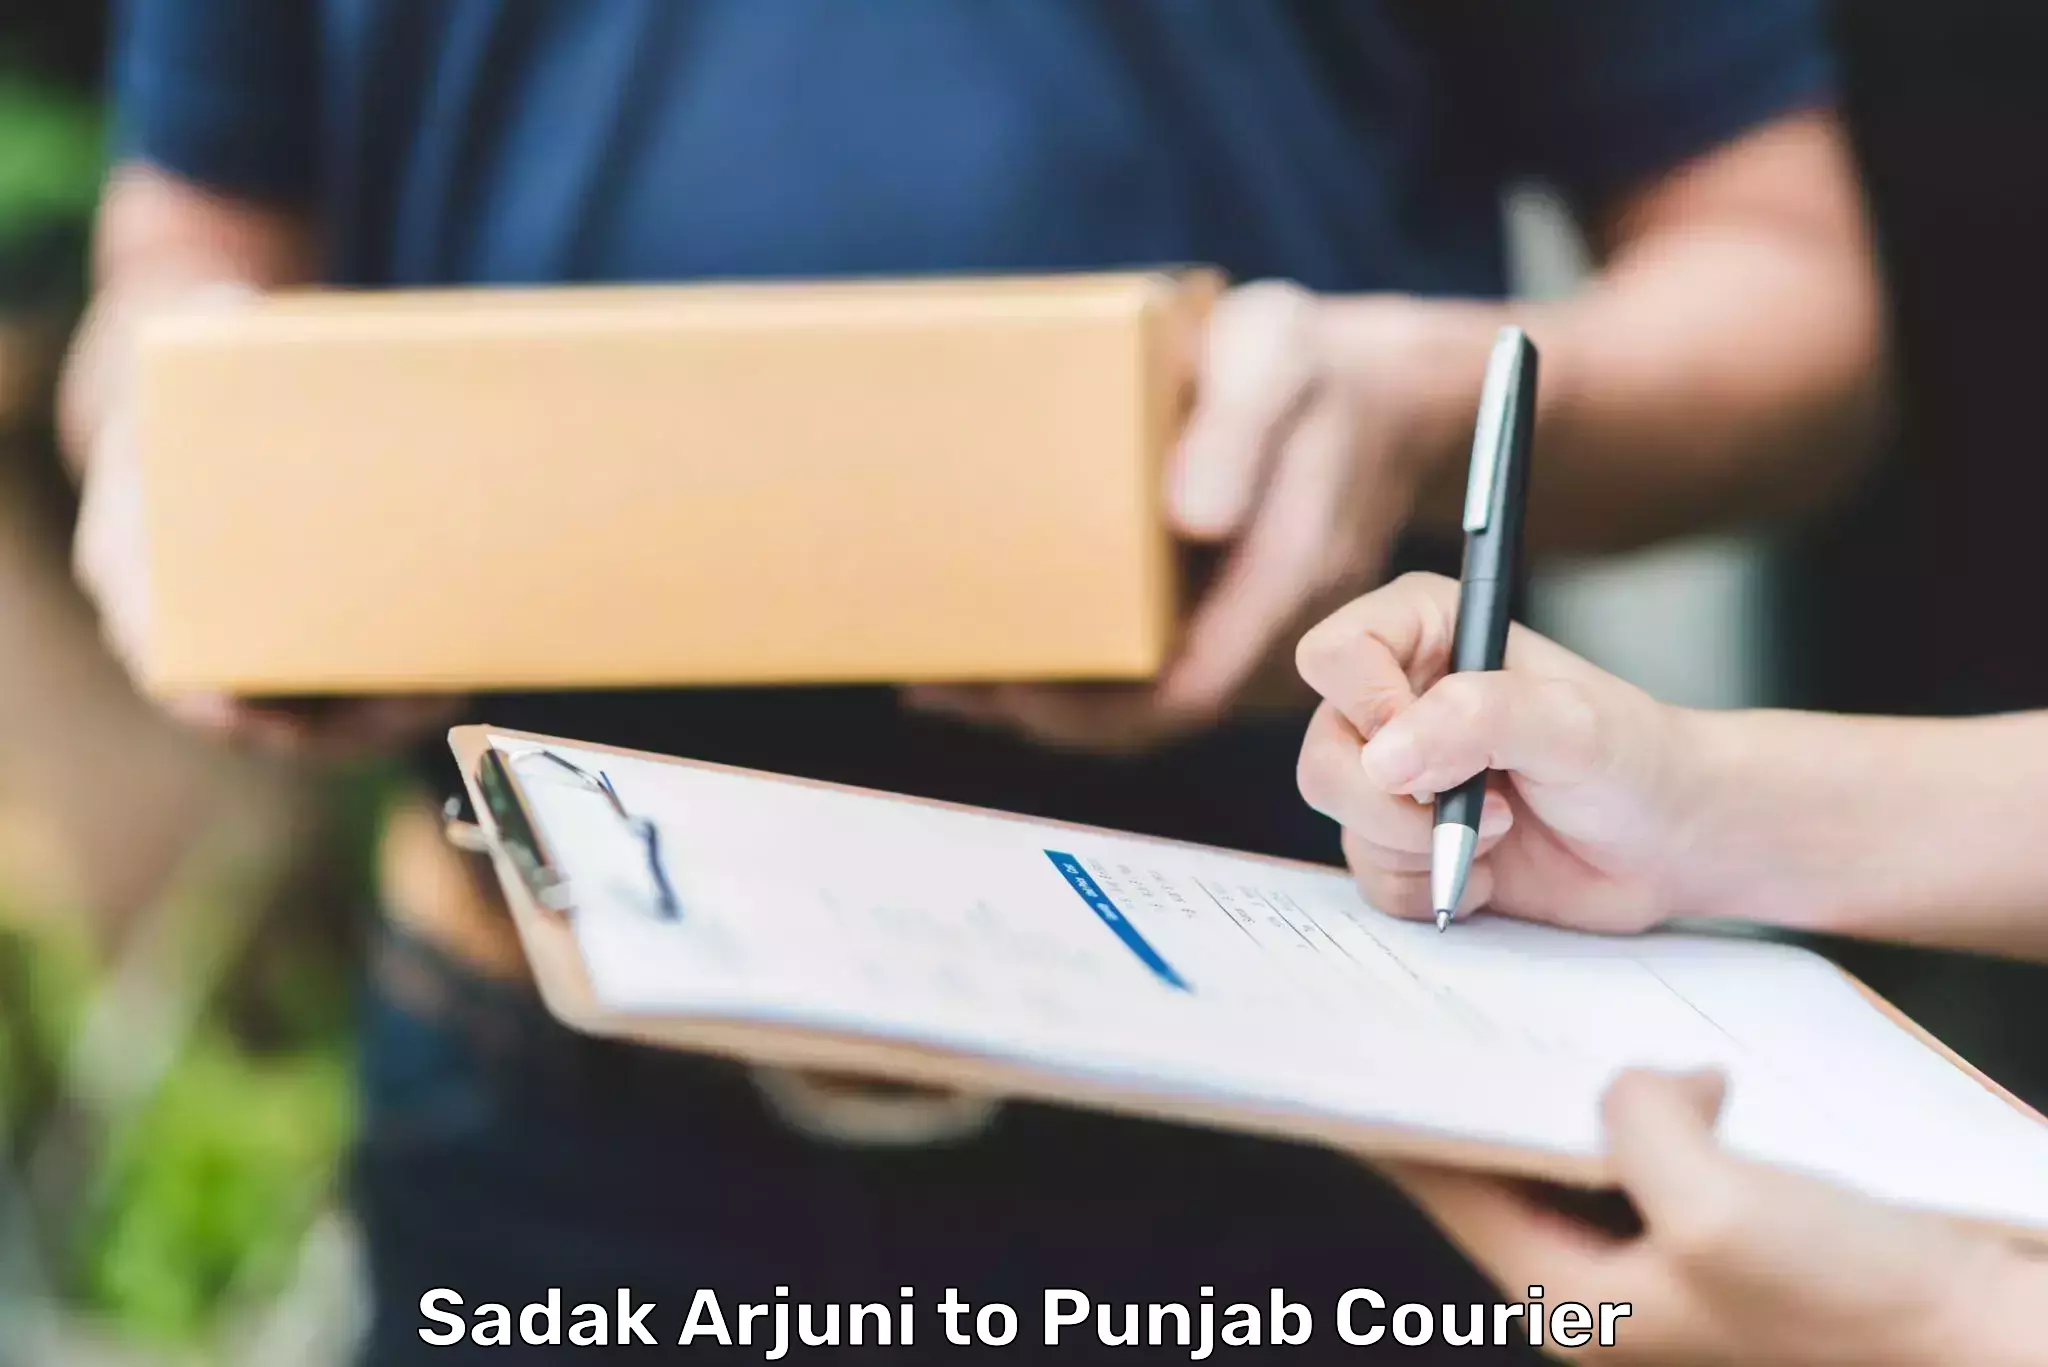 Premium delivery services Sadak Arjuni to Punjab